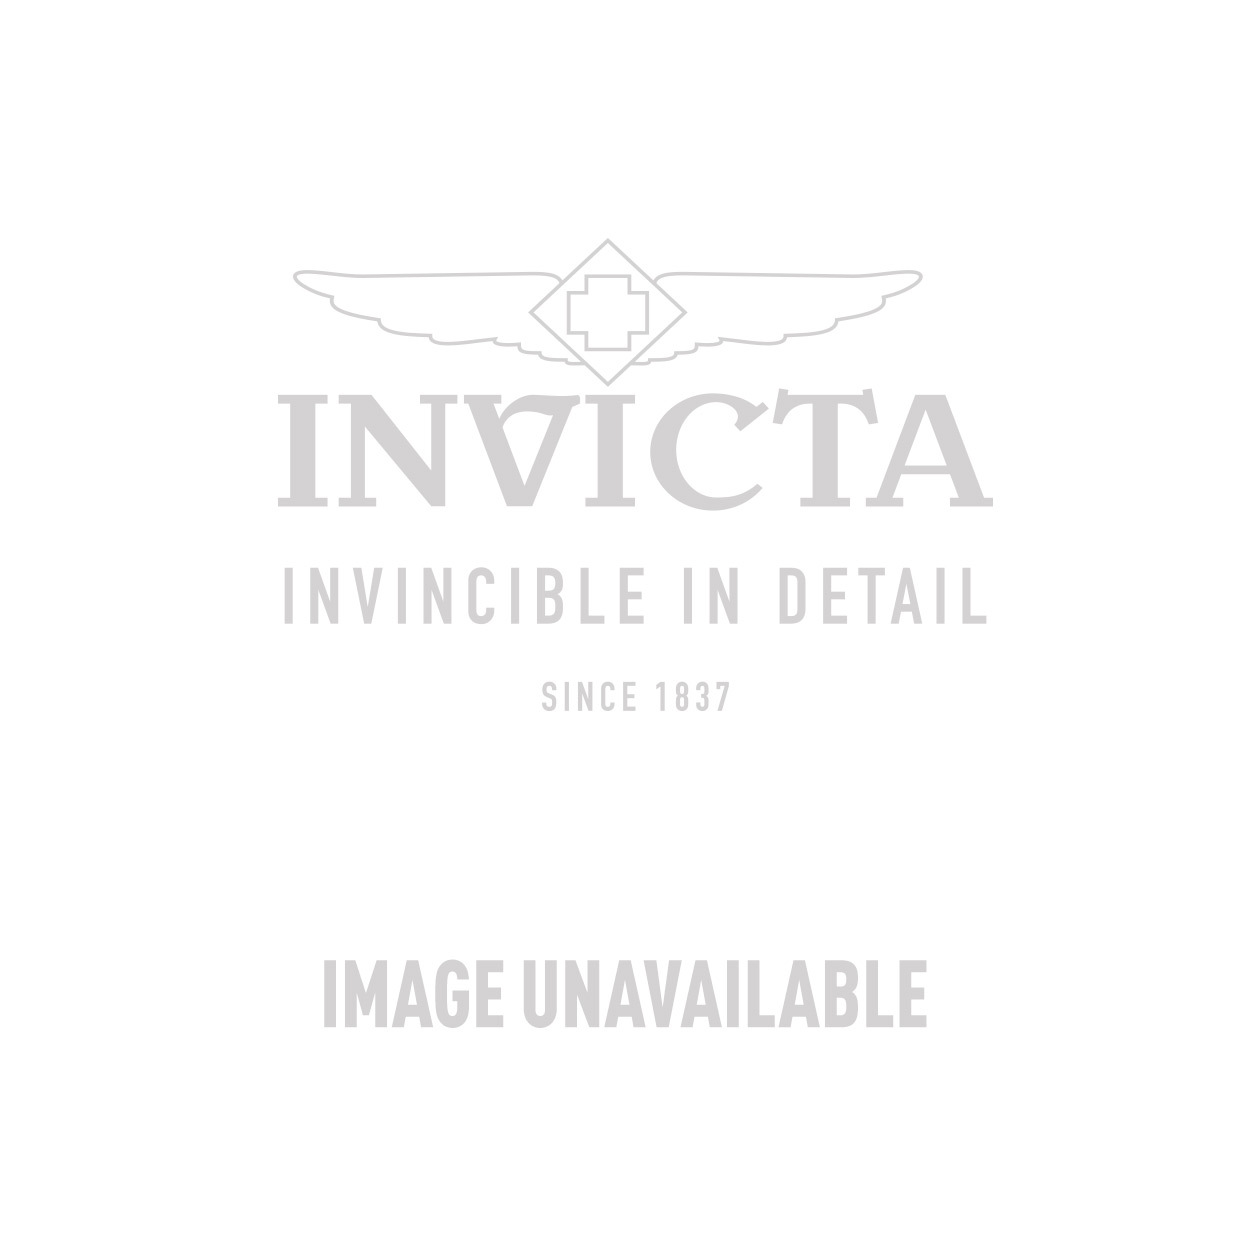 Invicta DC Comics Limited Edition Batman Mens Automatic 47 mm Black Case Black Dial - Model 27174